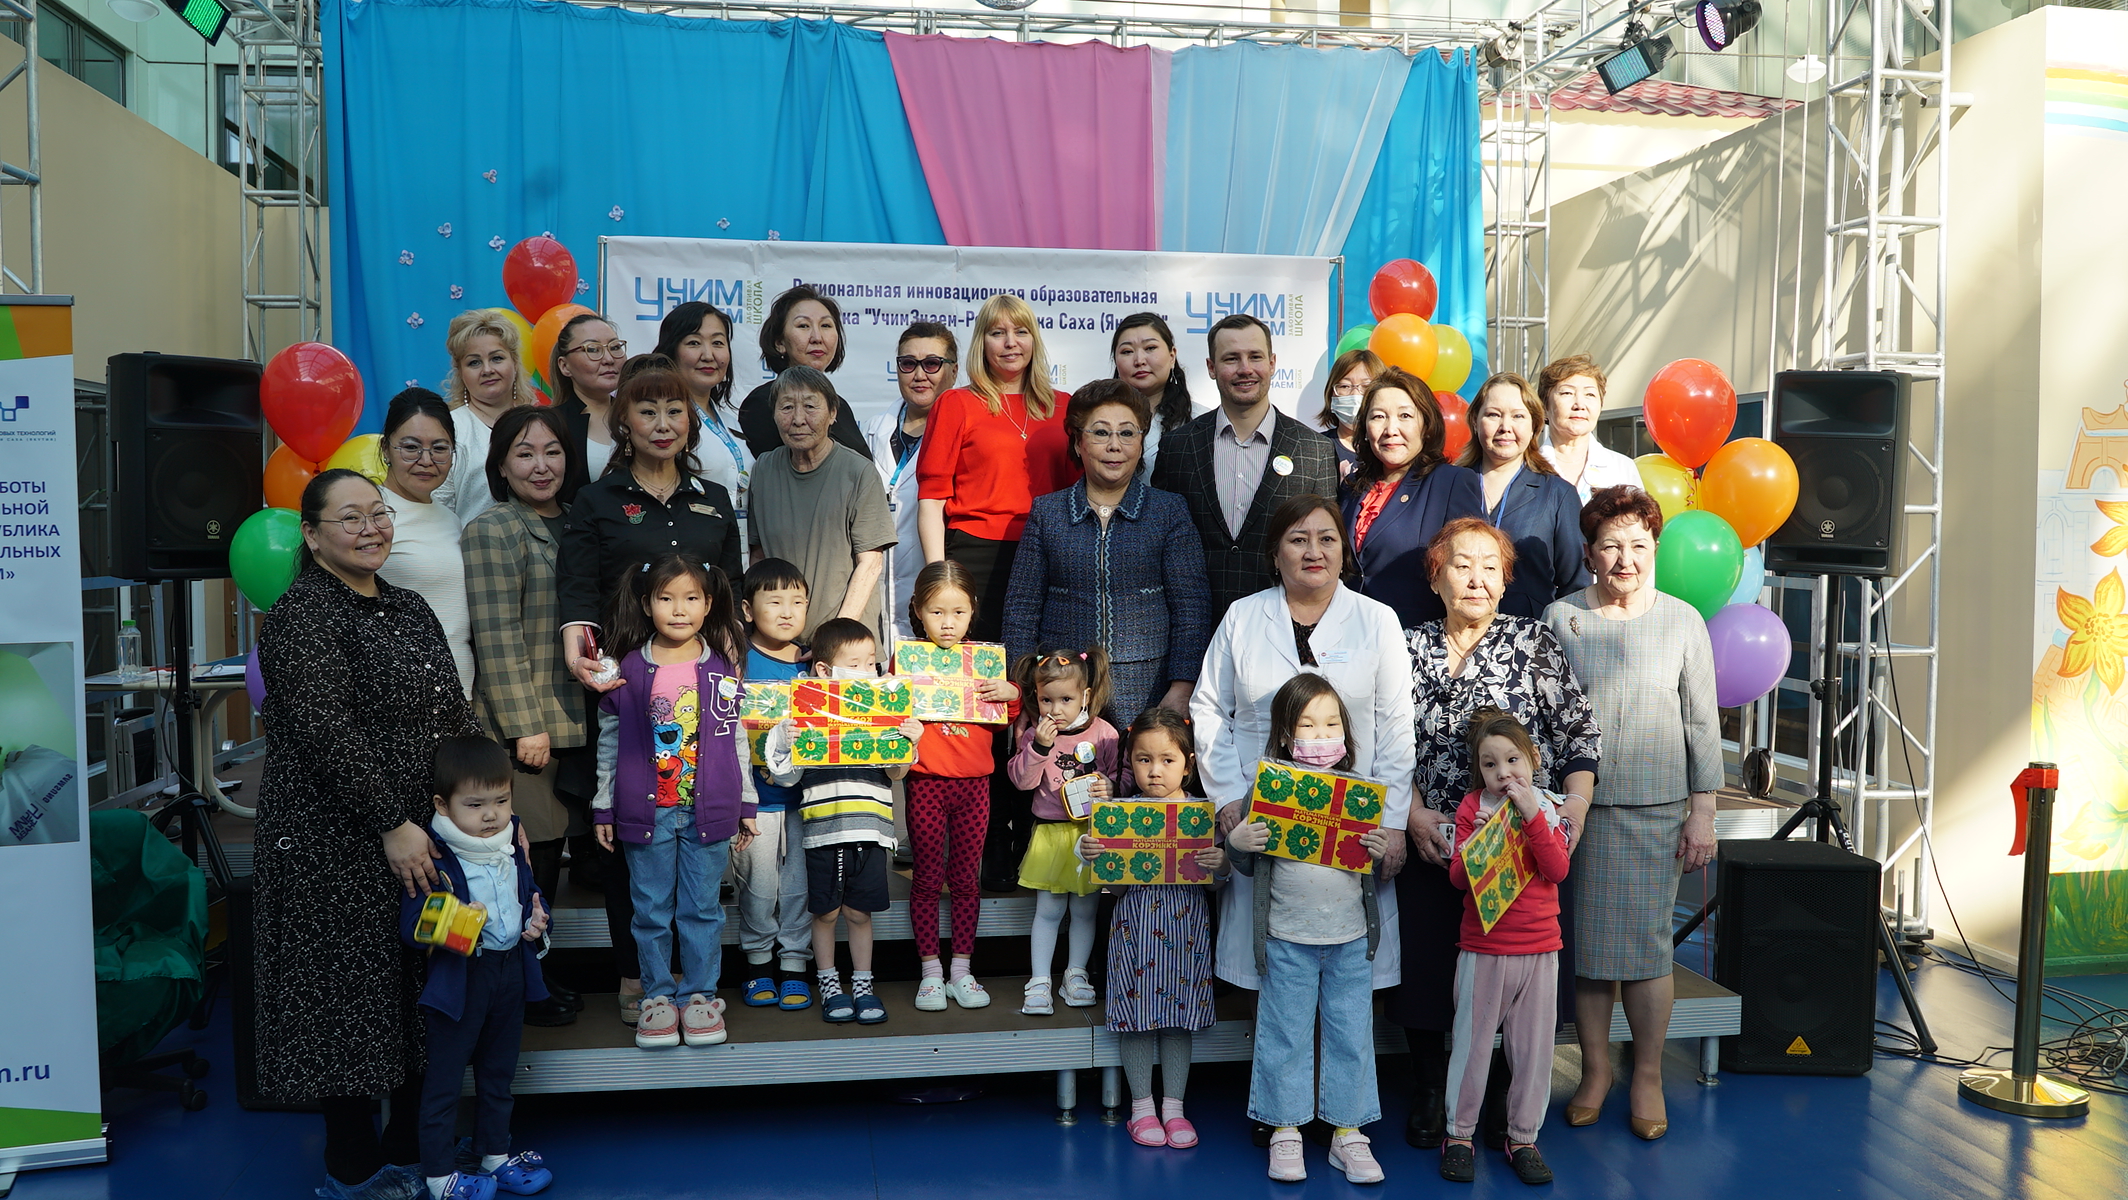 Образовательная площадка «УчимЗнаем» открылась в Национальном центре медицины в Якутске